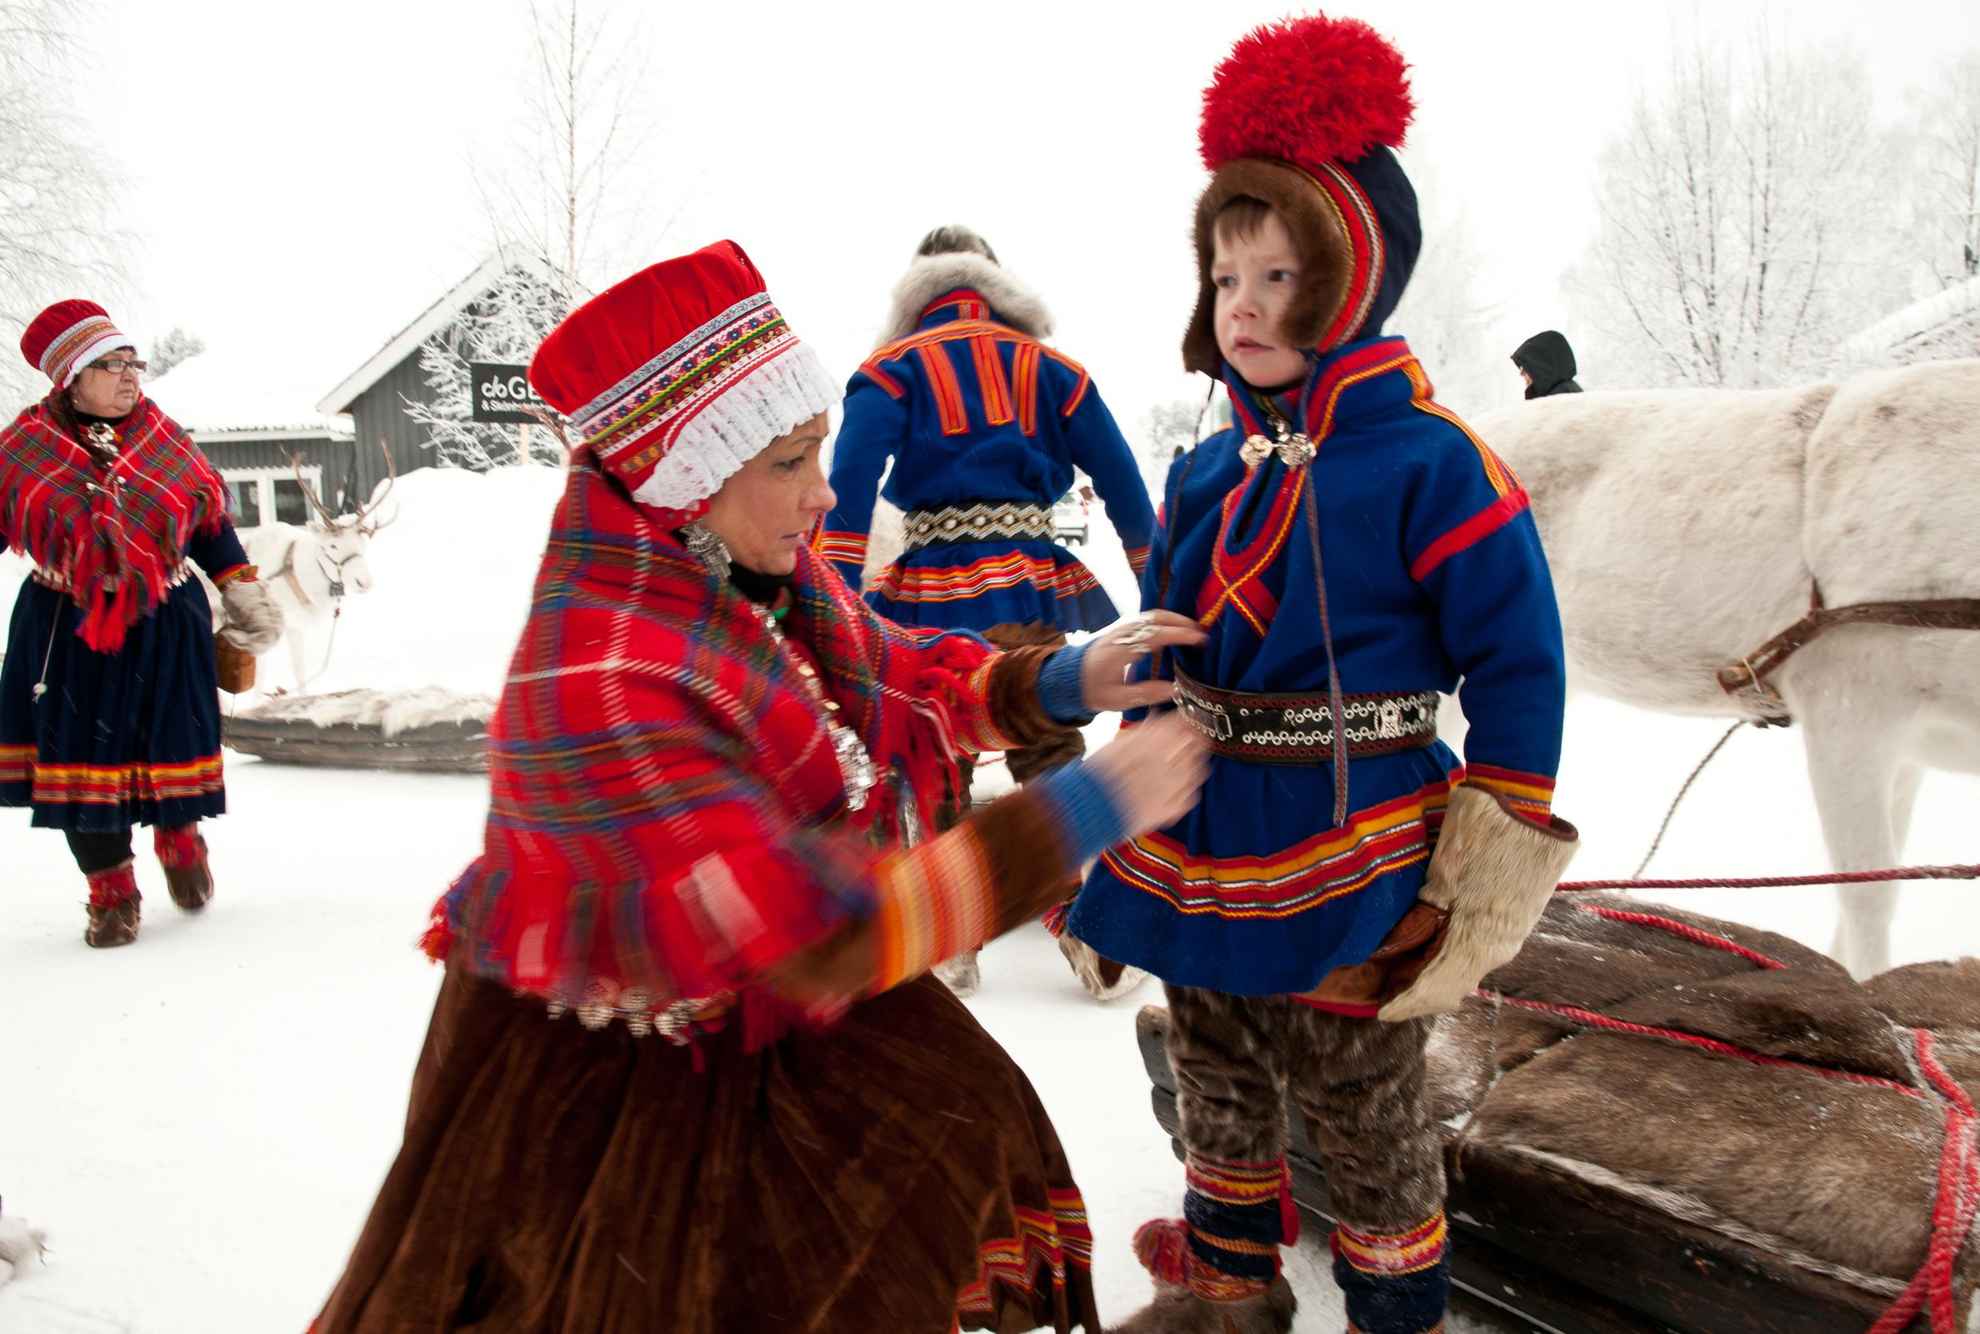 The Sámi costume